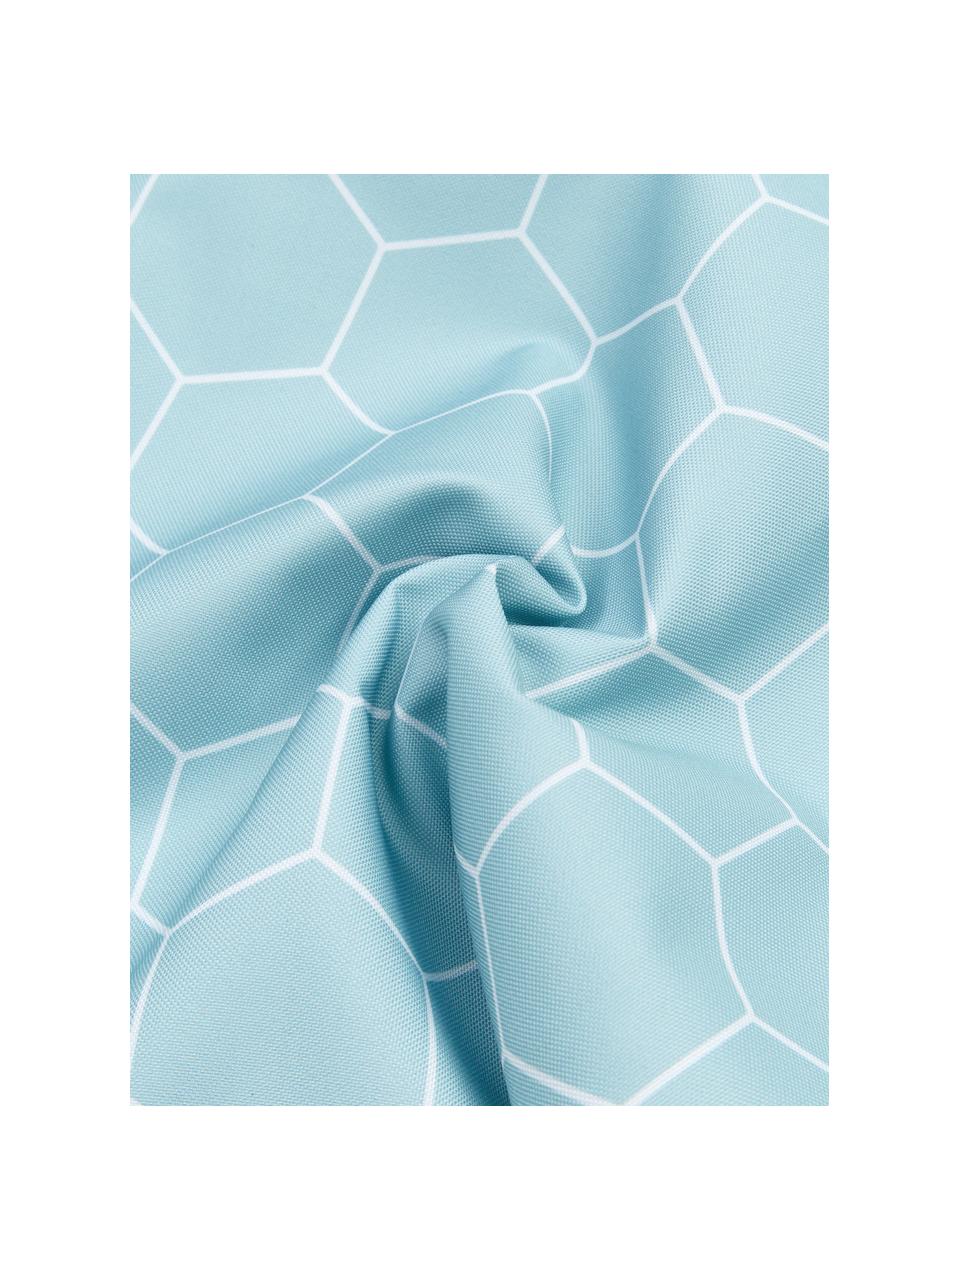 Poduszka zewnętrzna Honeycomb, 100% poliester, Niebieski, biały, S 47 x D 47 cm